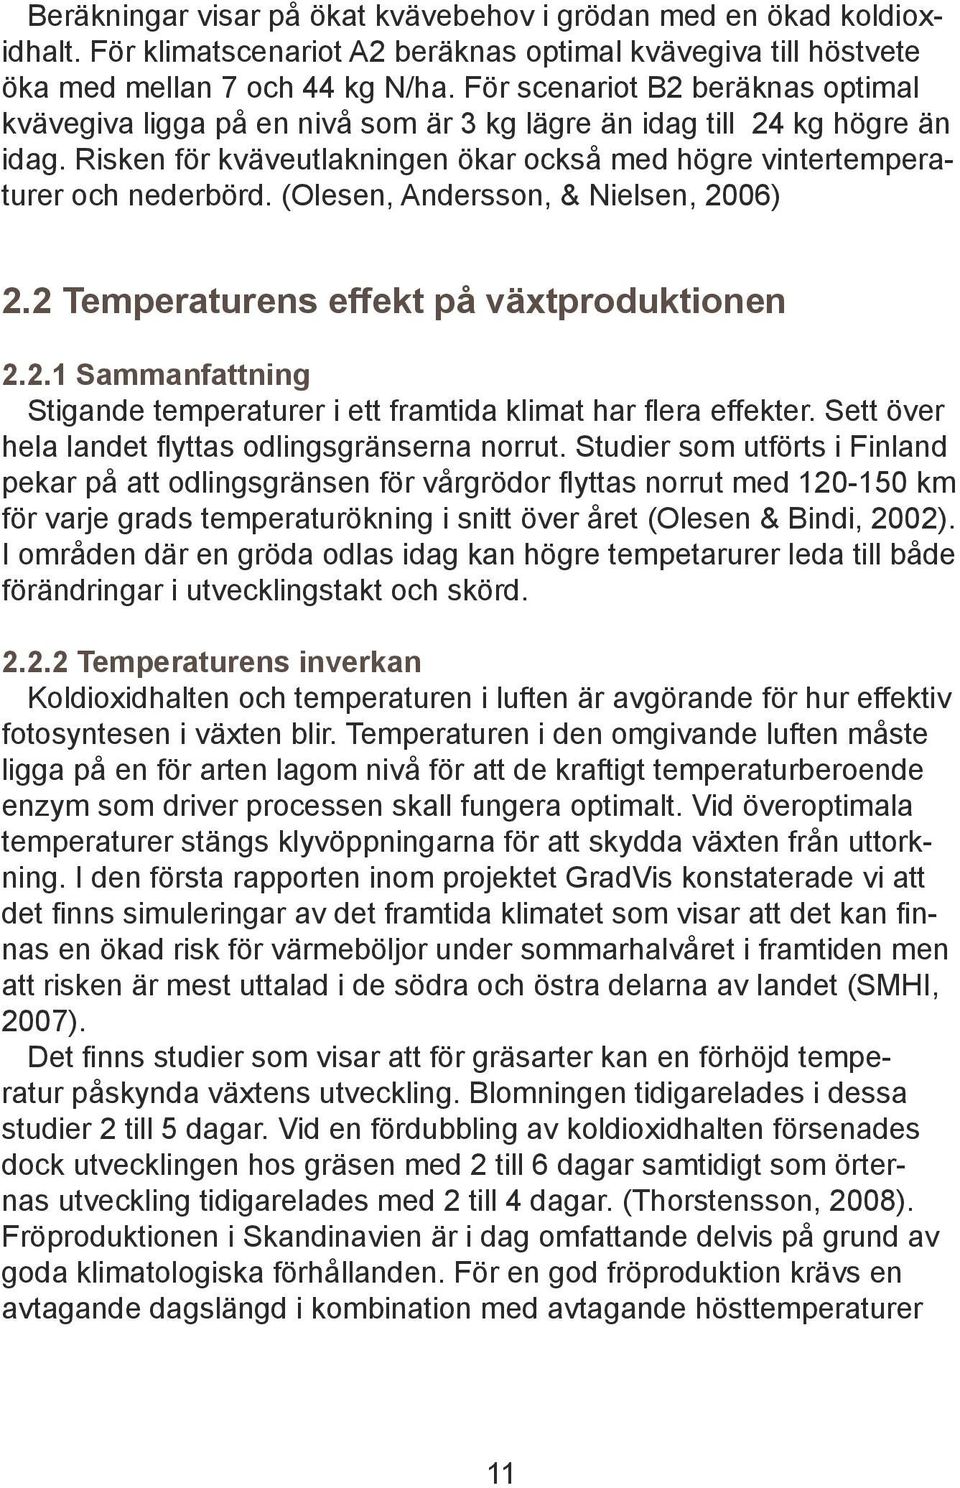 (Olesen, Andersson, & Nielsen, 2006) 2.2 Temperaturens effekt på växtproduktionen 2.2.1 Sammanfattning Stigande temperaturer i ett framtida klimat har flera effekter.